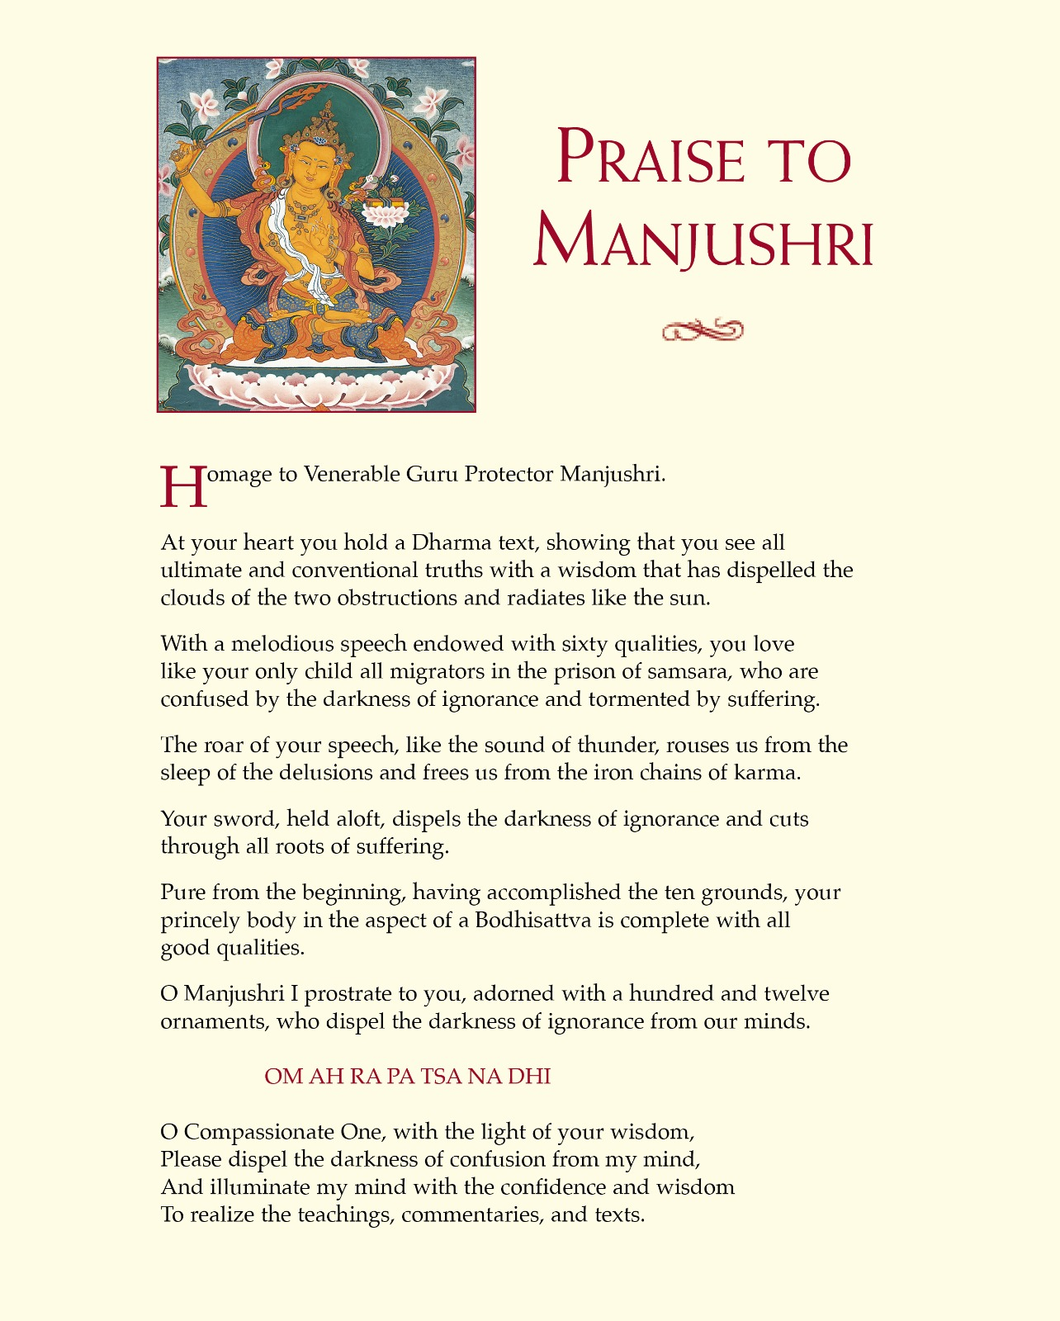 Praise to Manjushri